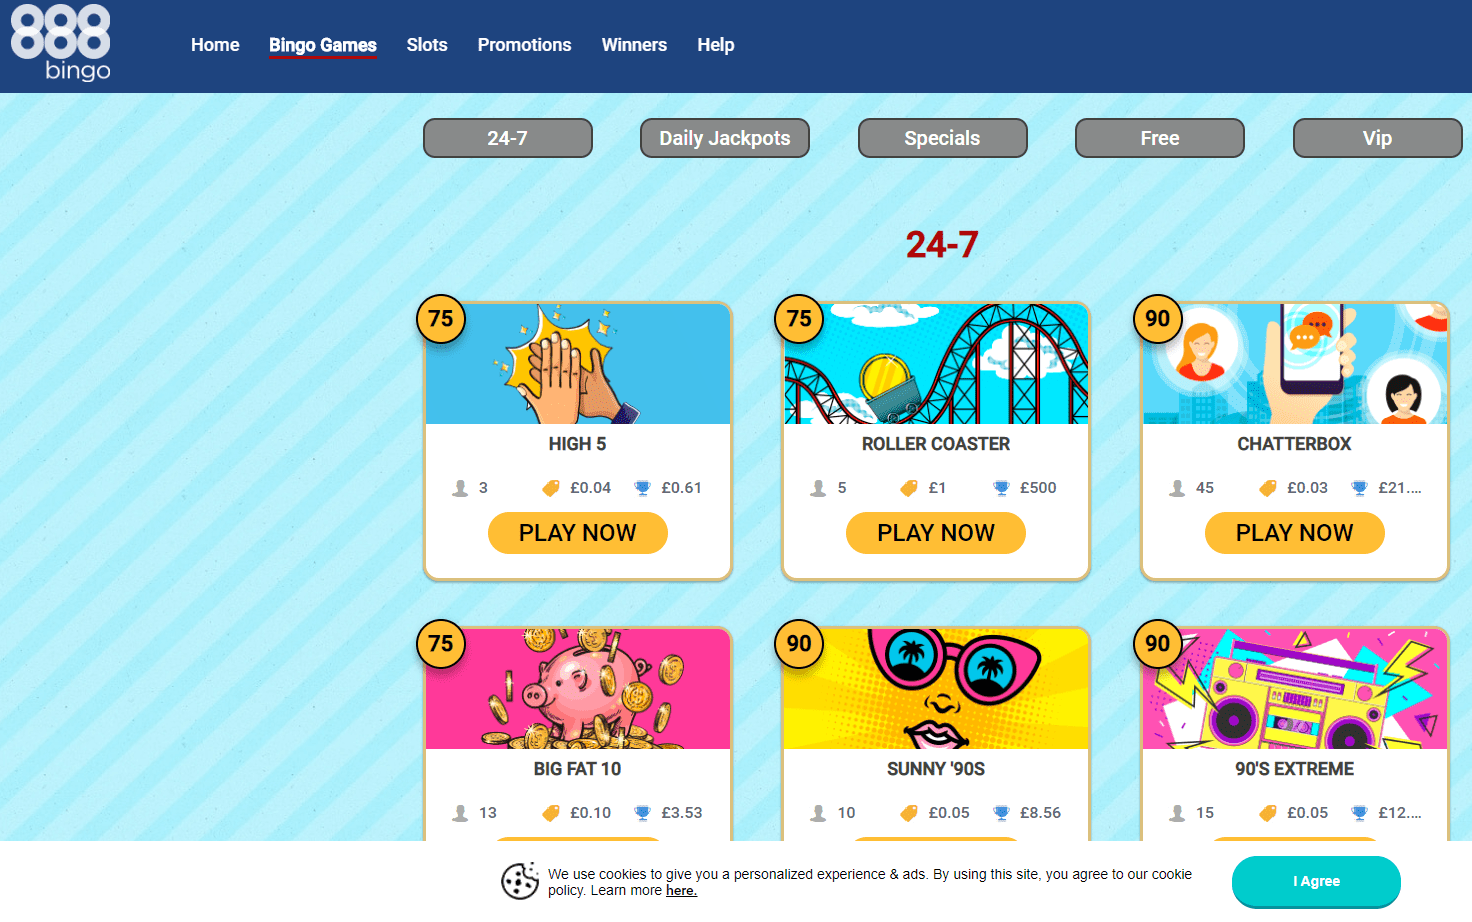 888 Bingo games page